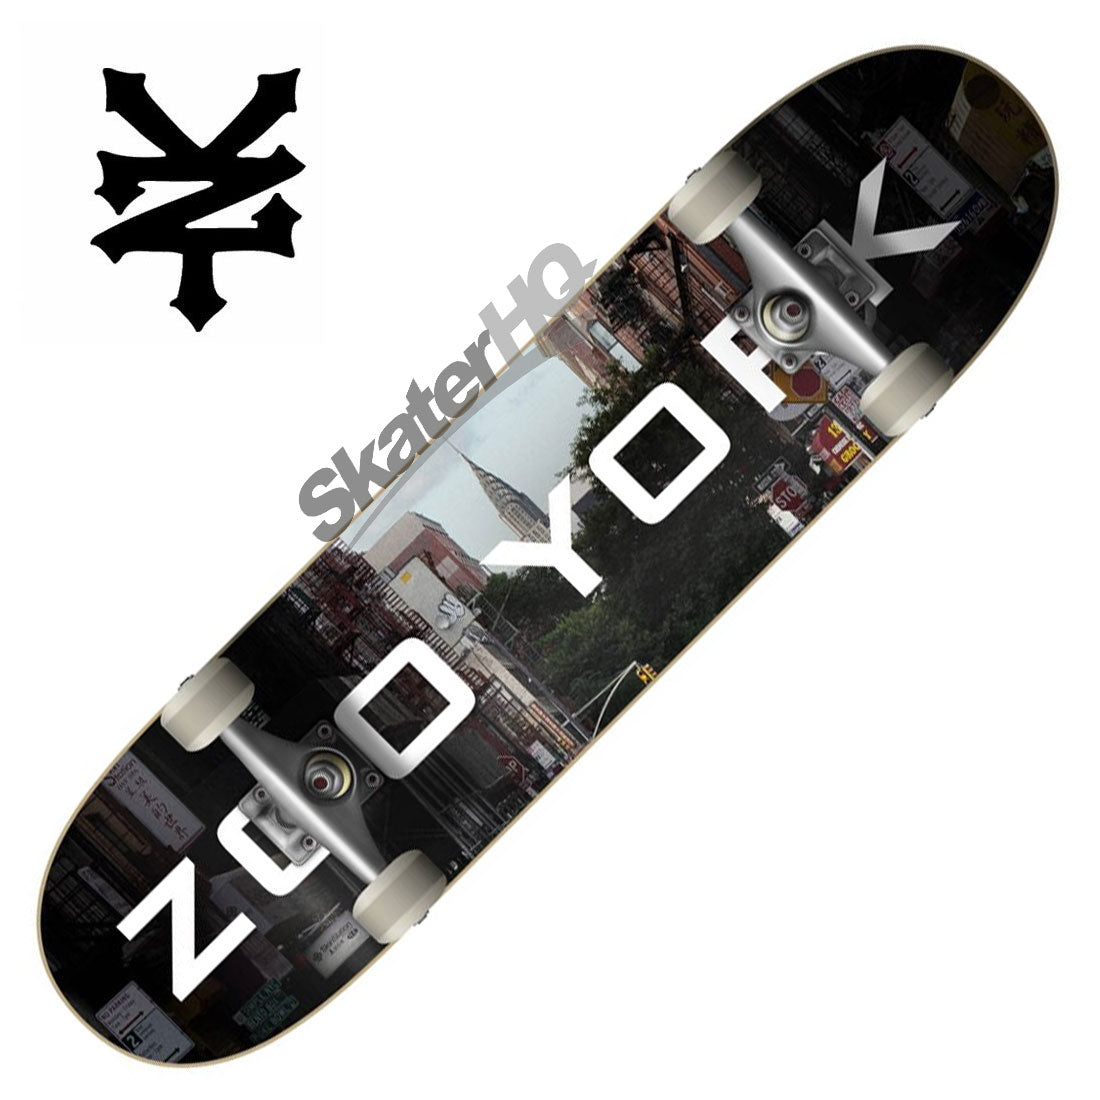 Zoo York Chrysler Logo Block 8.0 Complete Skateboard Completes Modern Street